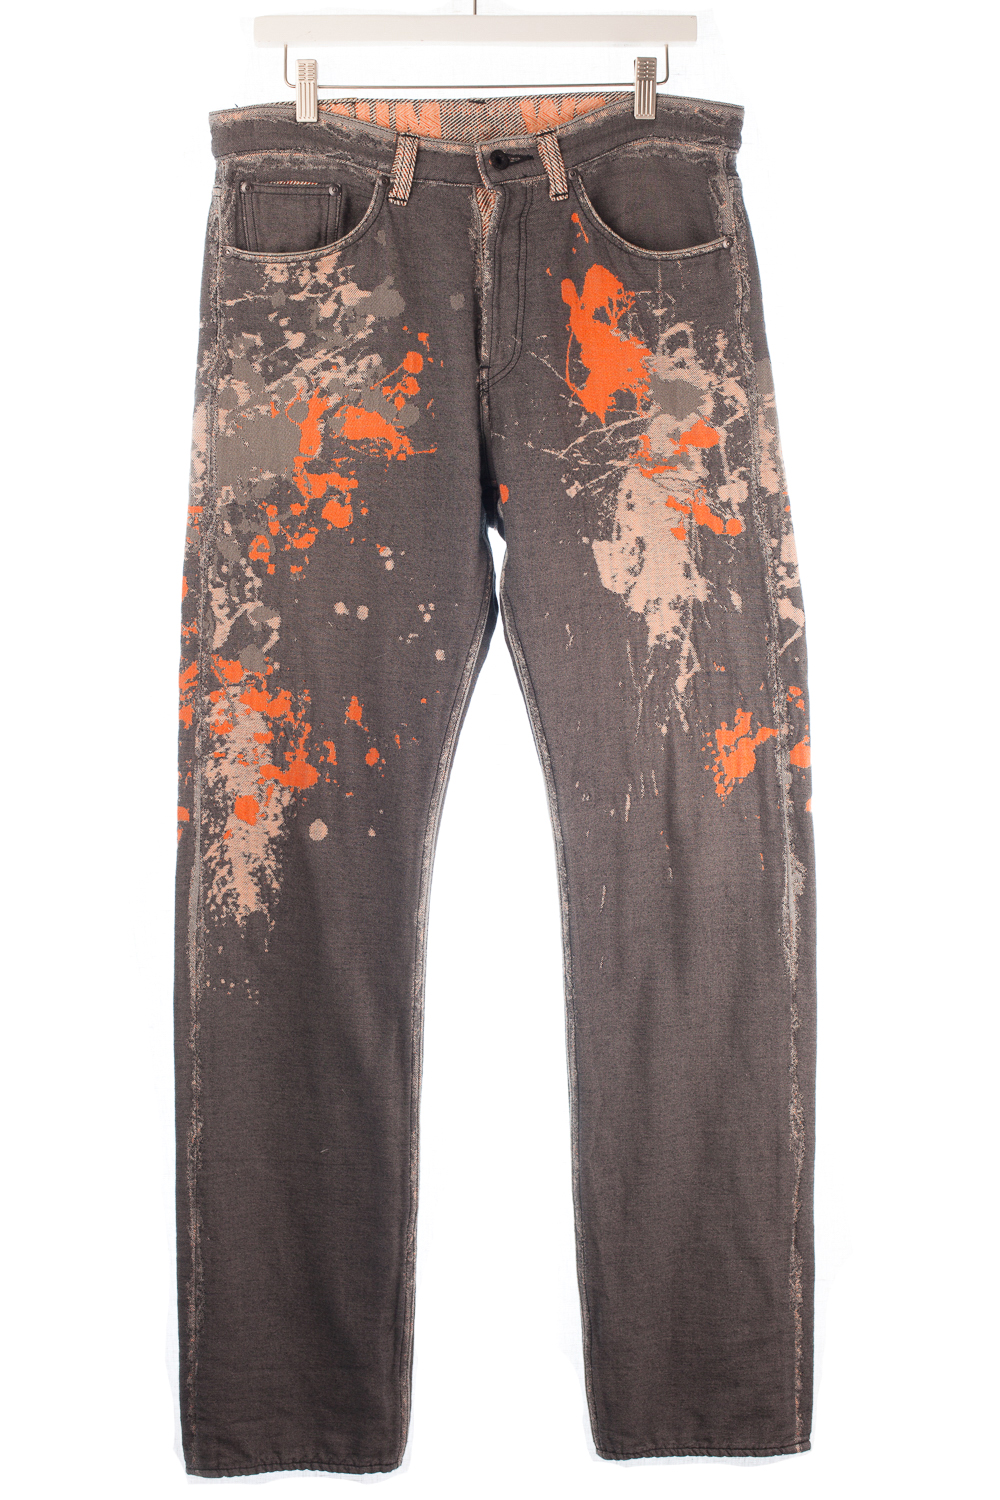 APOC Jacquard Paint Splatter Pants 